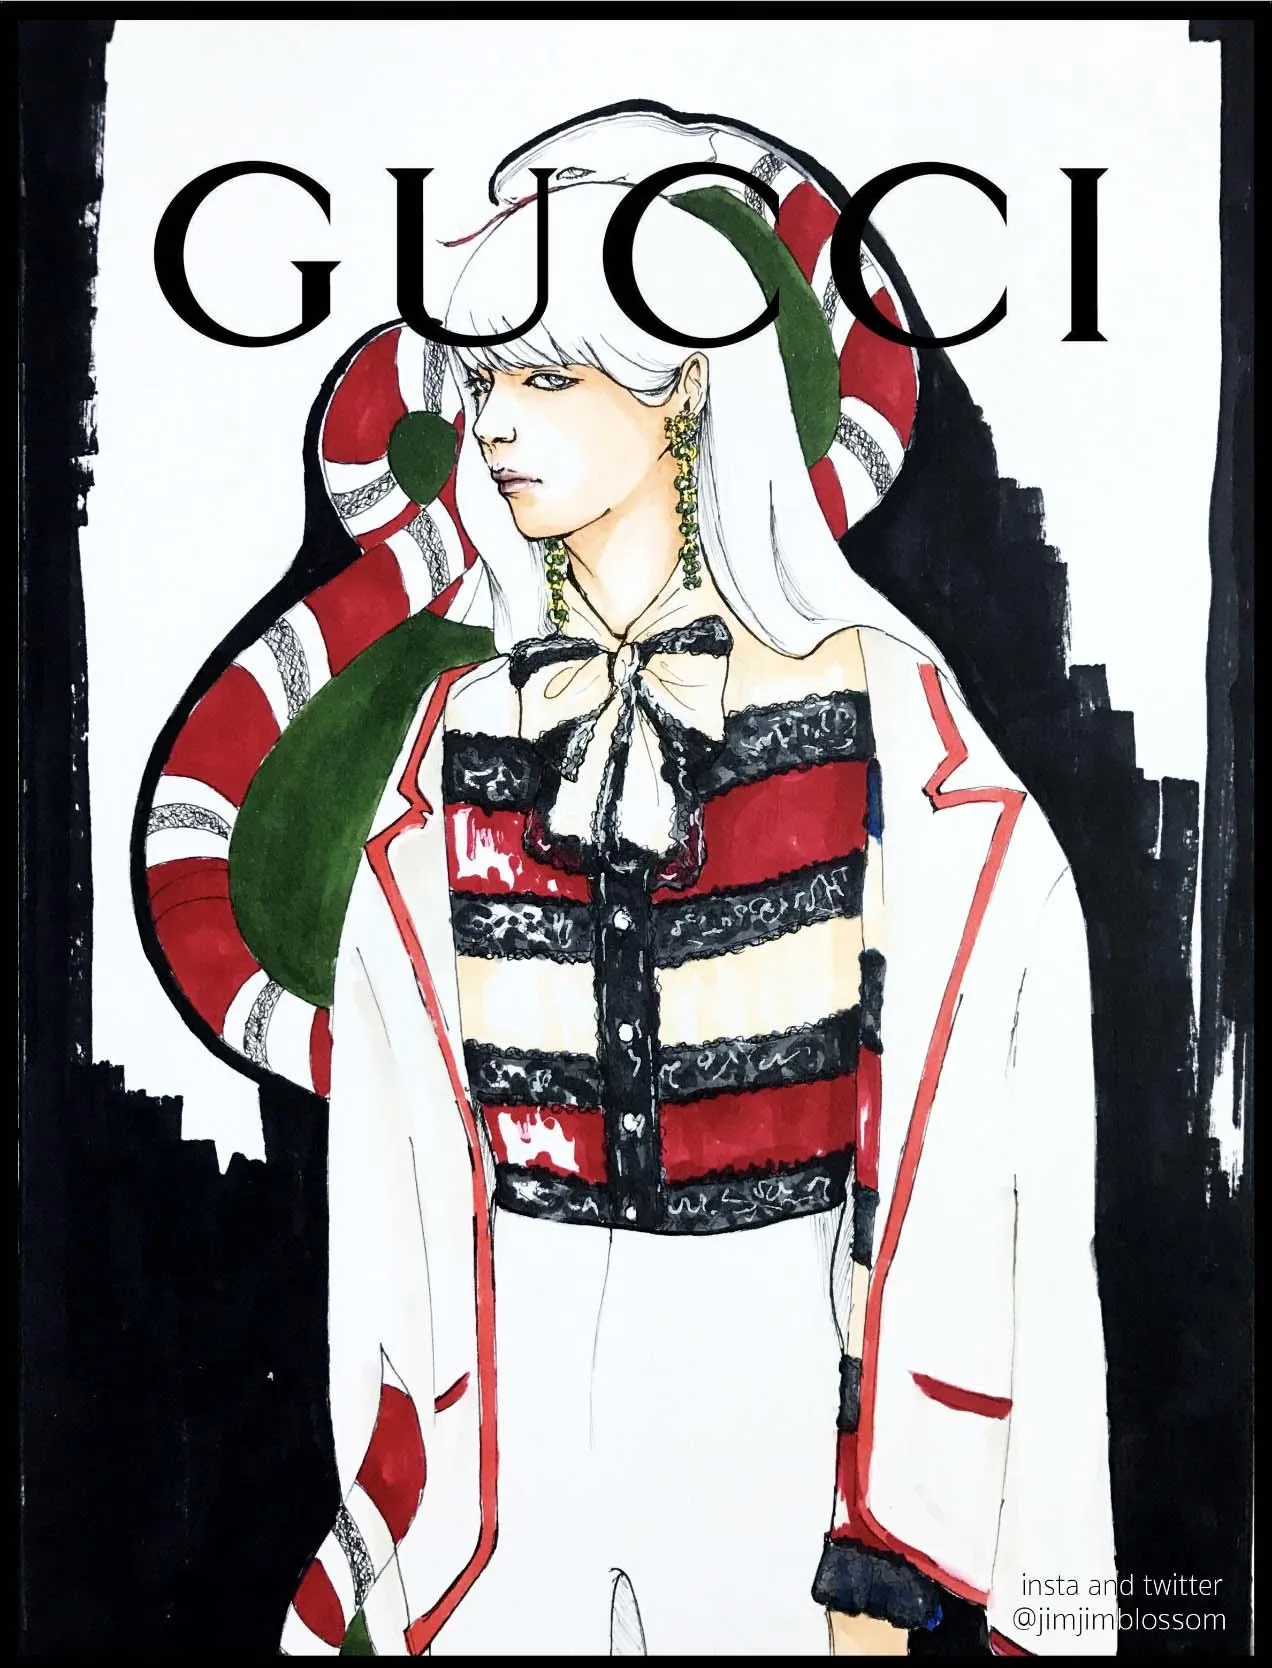 Hình Ảnh Gucci Nền Đen Đẹp Sang Chảnh Bậc Nhất  pgddttramtaueduvn